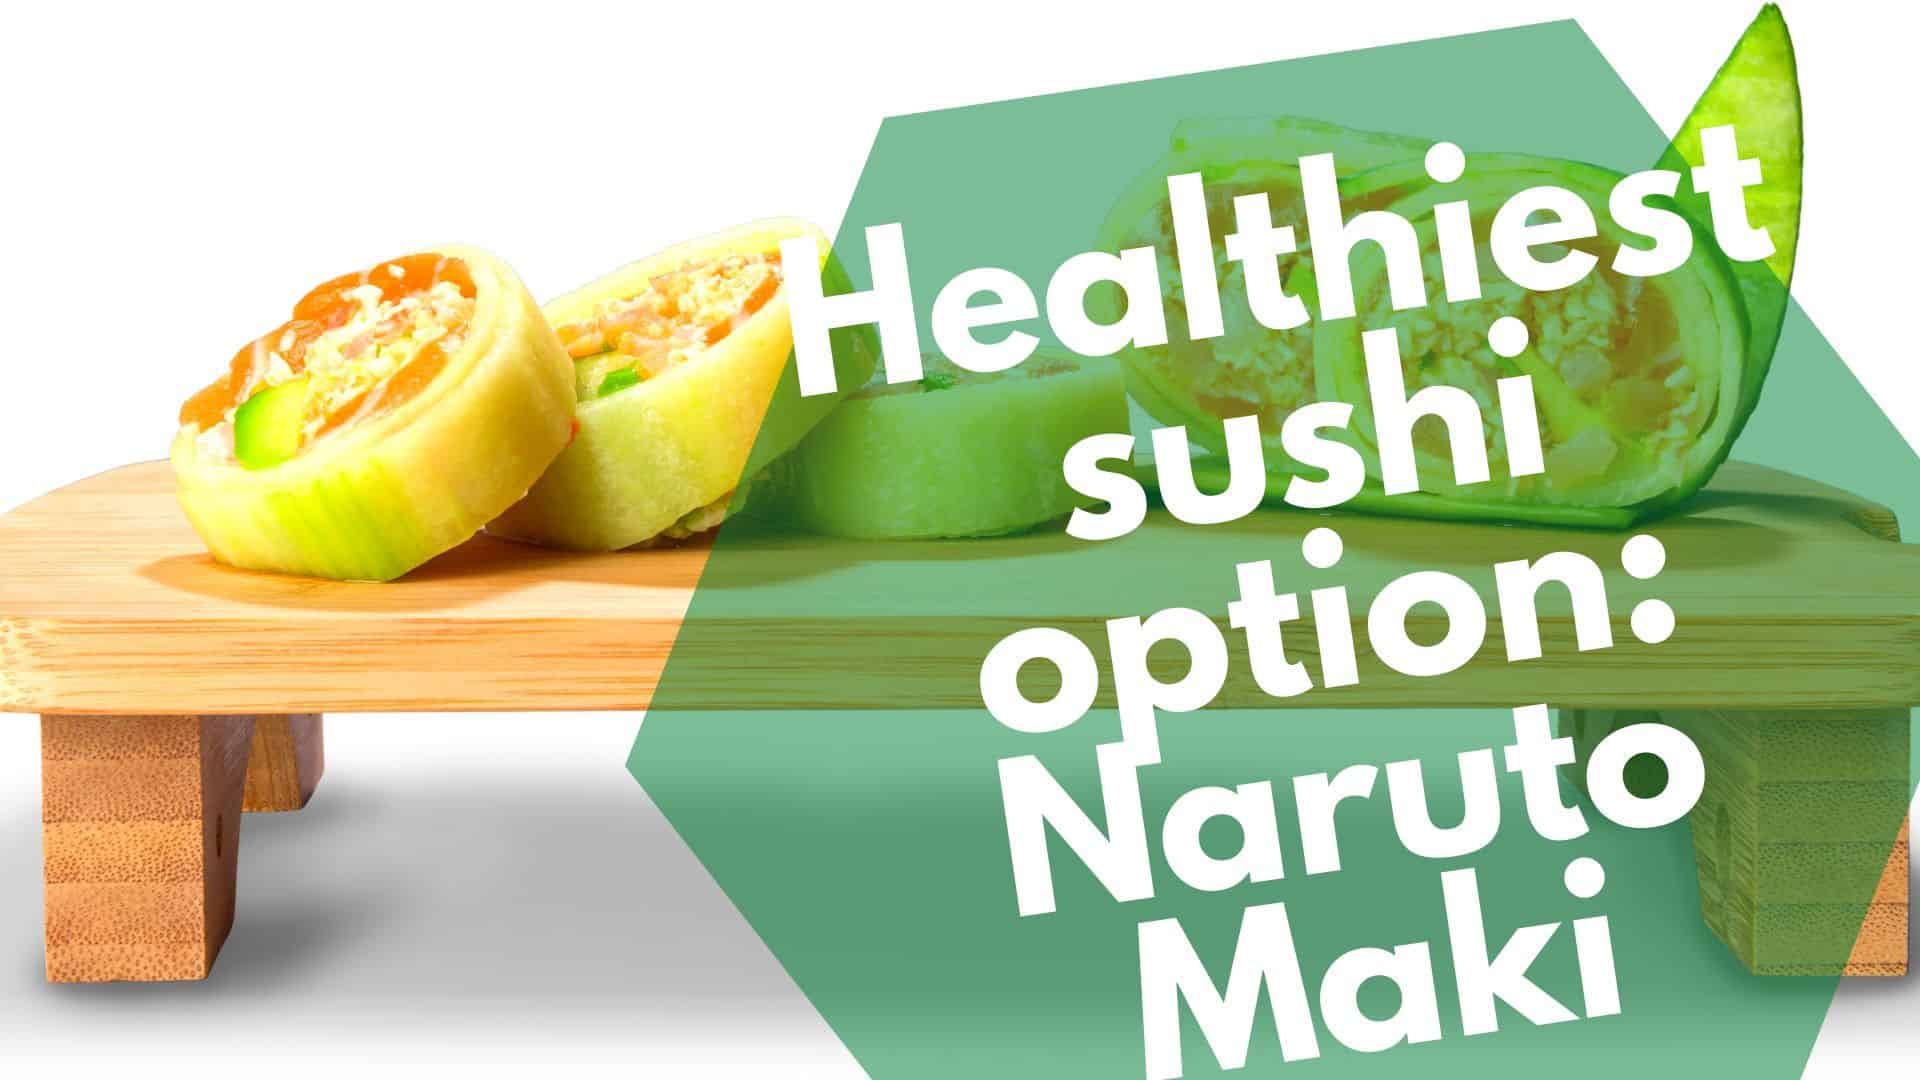 Khetho e ntle ka ho fetisisa ea sushi: Naruto Maki